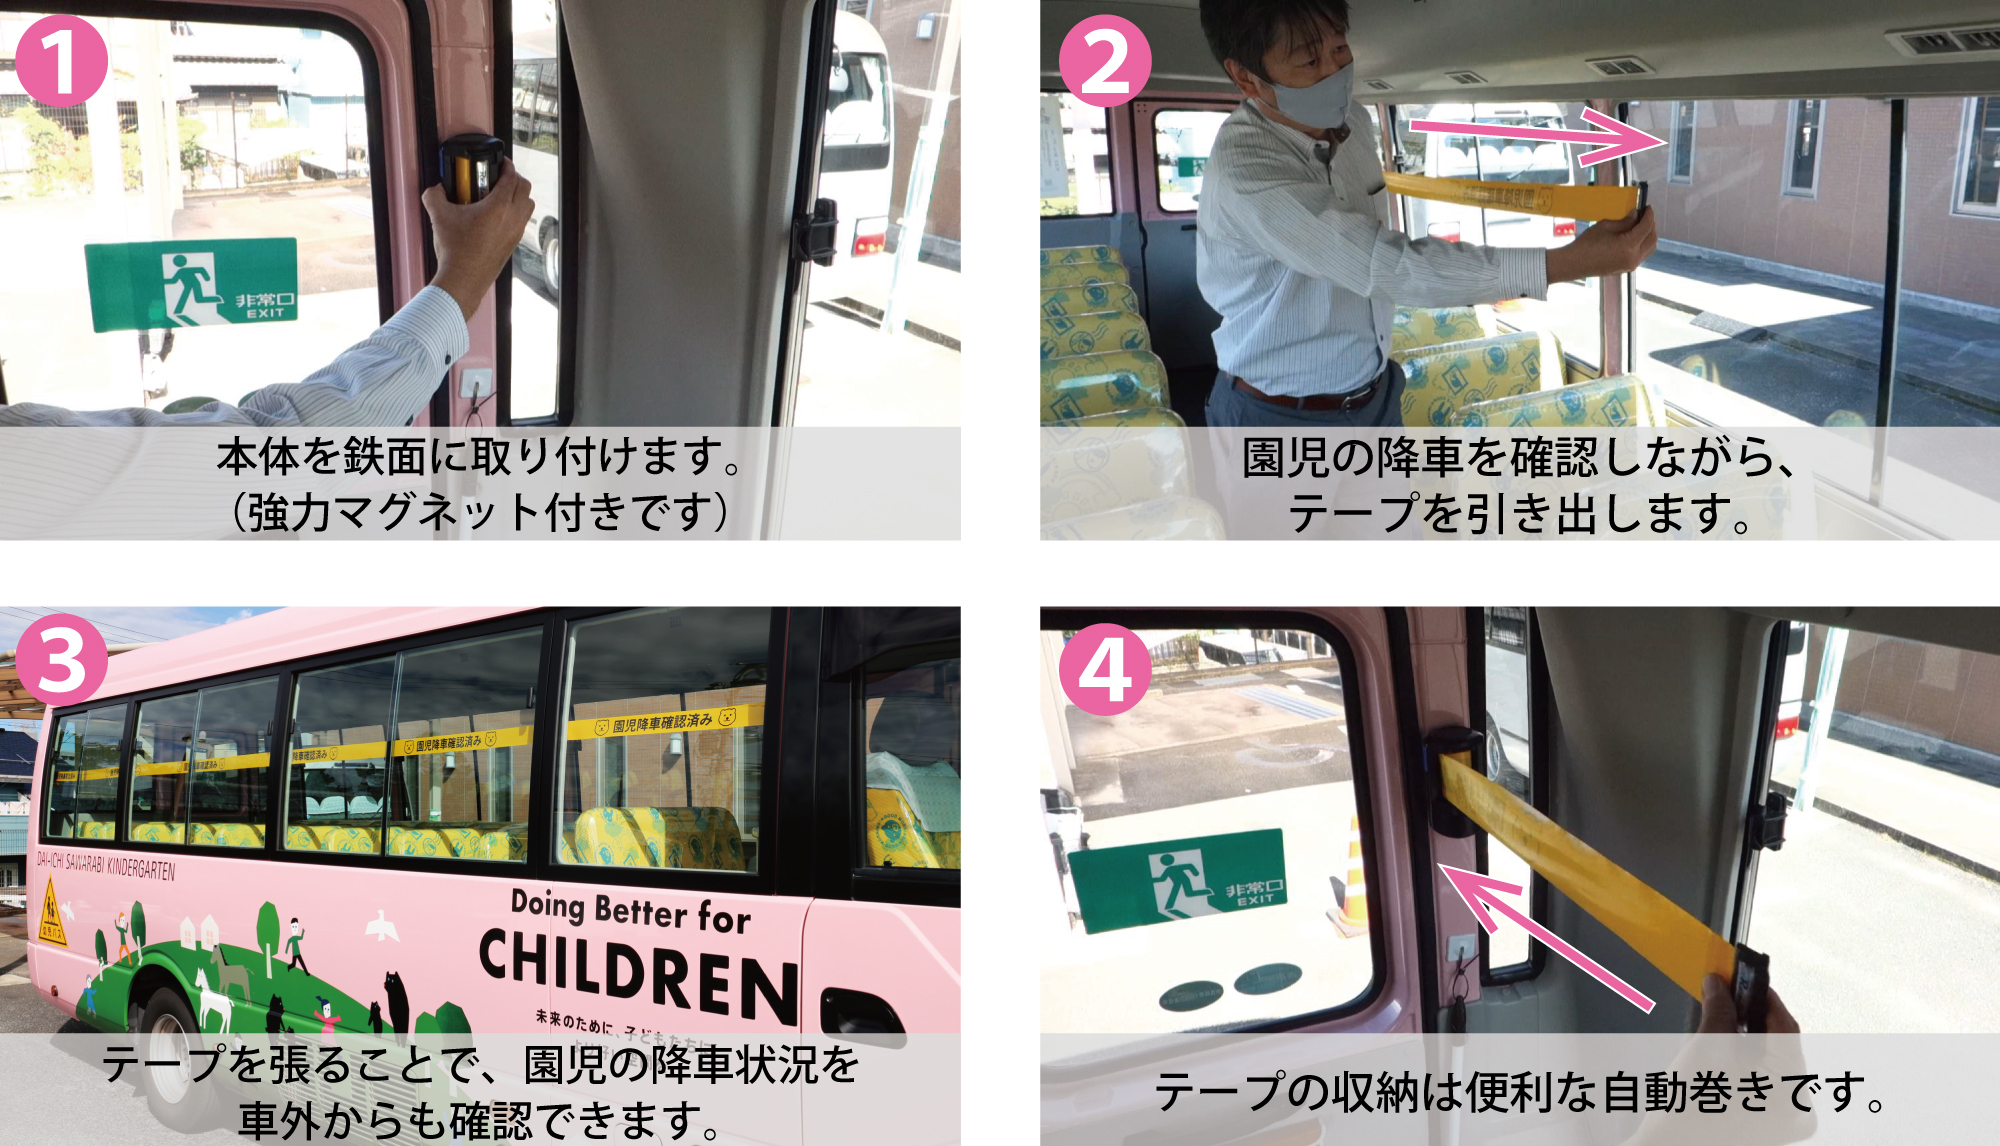 名古屋市私立幼稚園協会に“通園バス園児置き去り防止テープリール”を